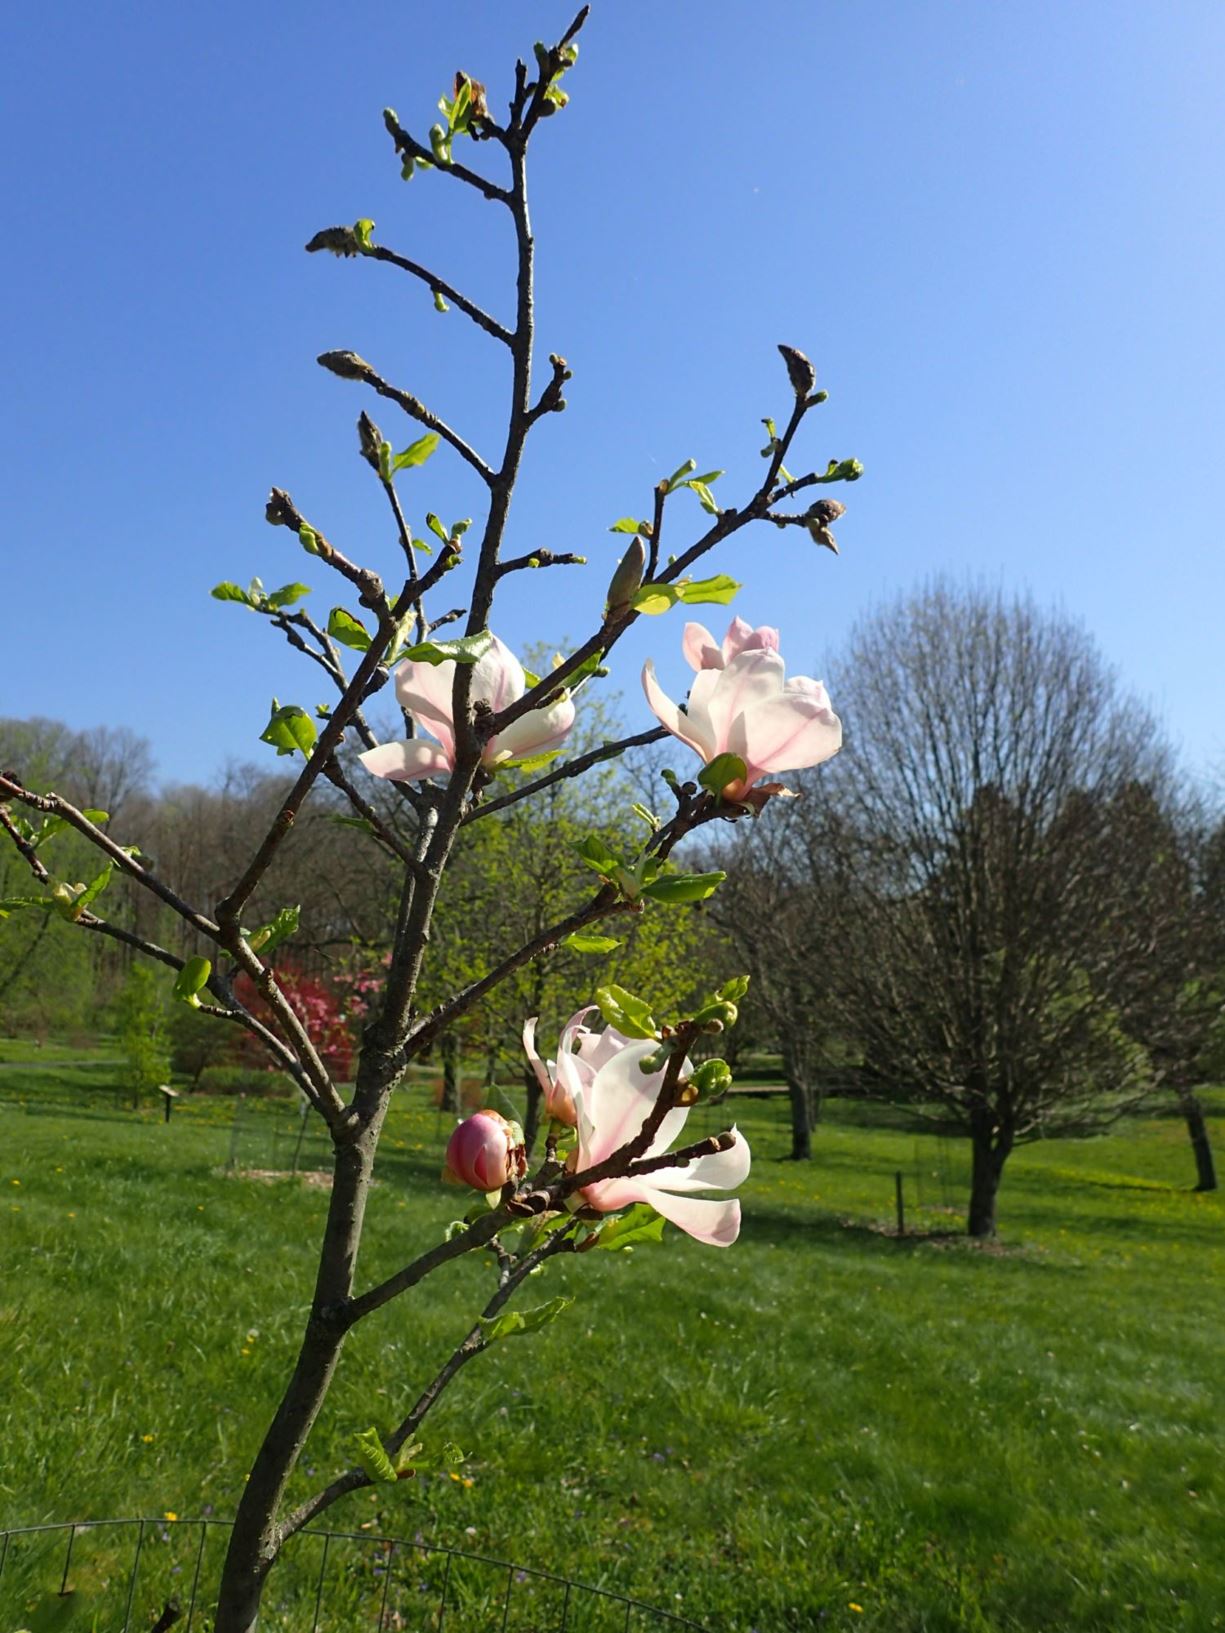 Magnolia 'Cosmic Gem' - Cosmic Gem magnolia